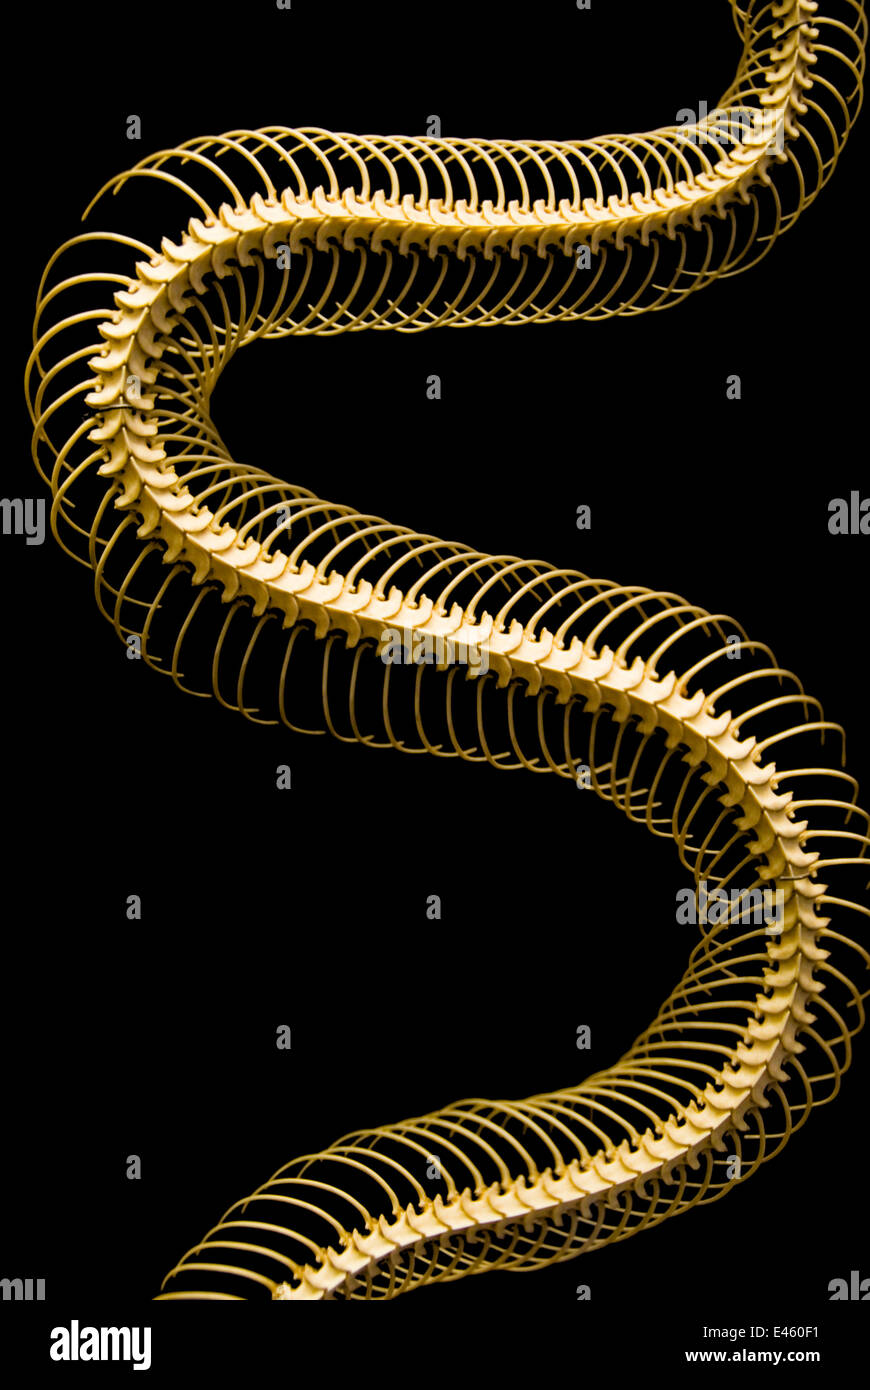 Skeleton of a Python (Python sp) Stock Photo